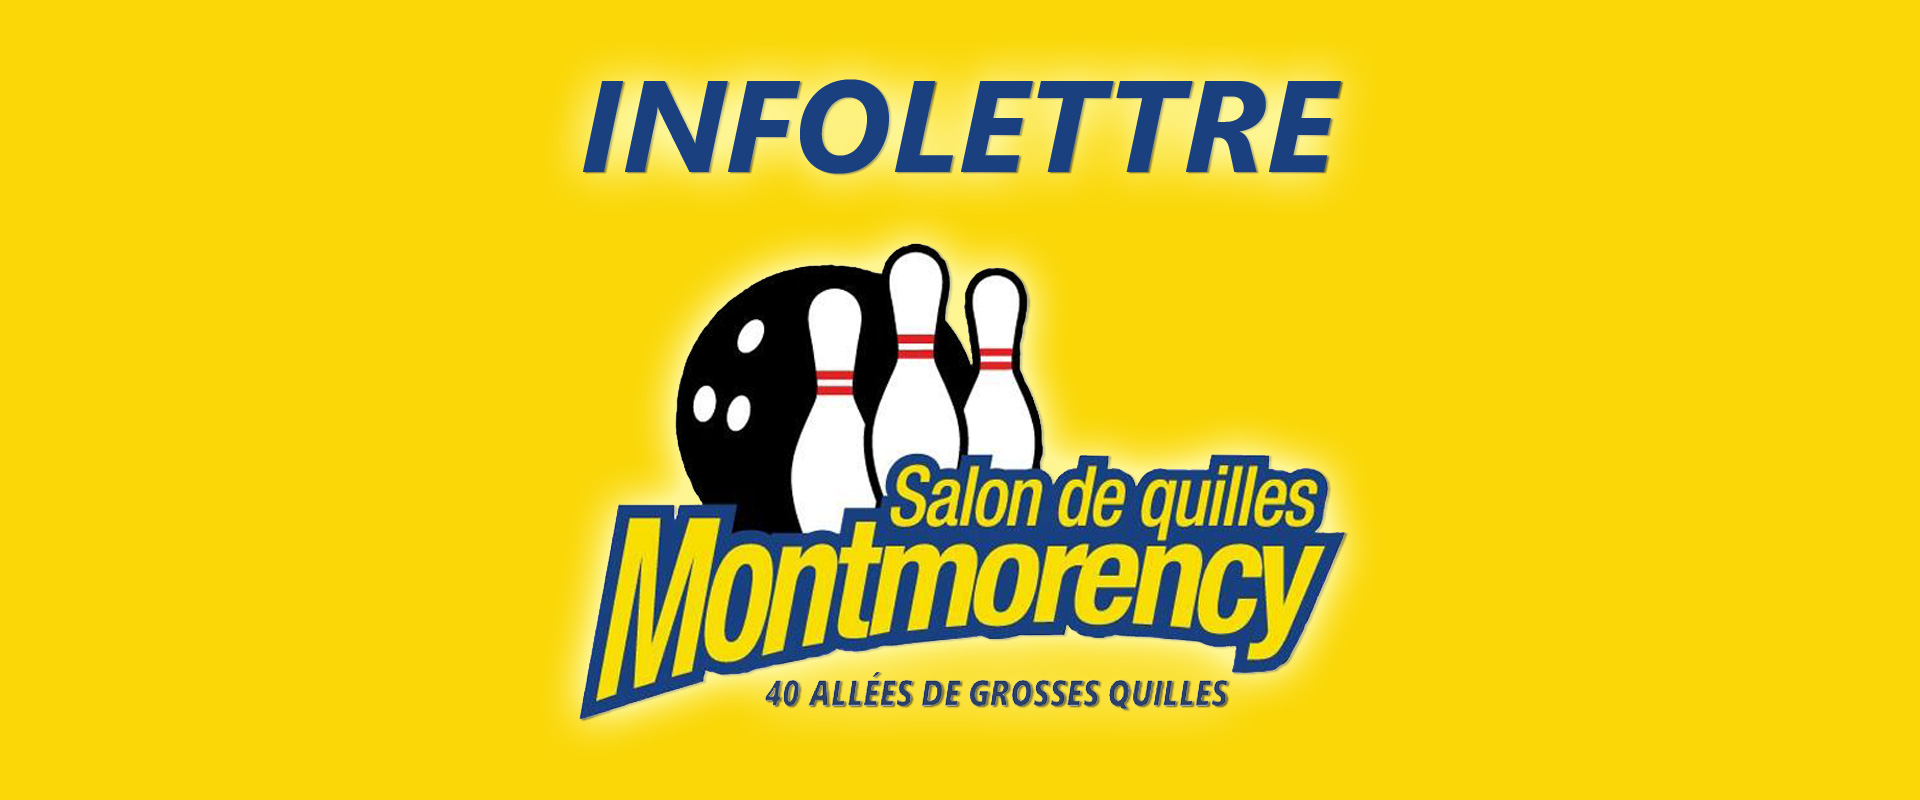 Newsletter Quilles Montmorency Québec